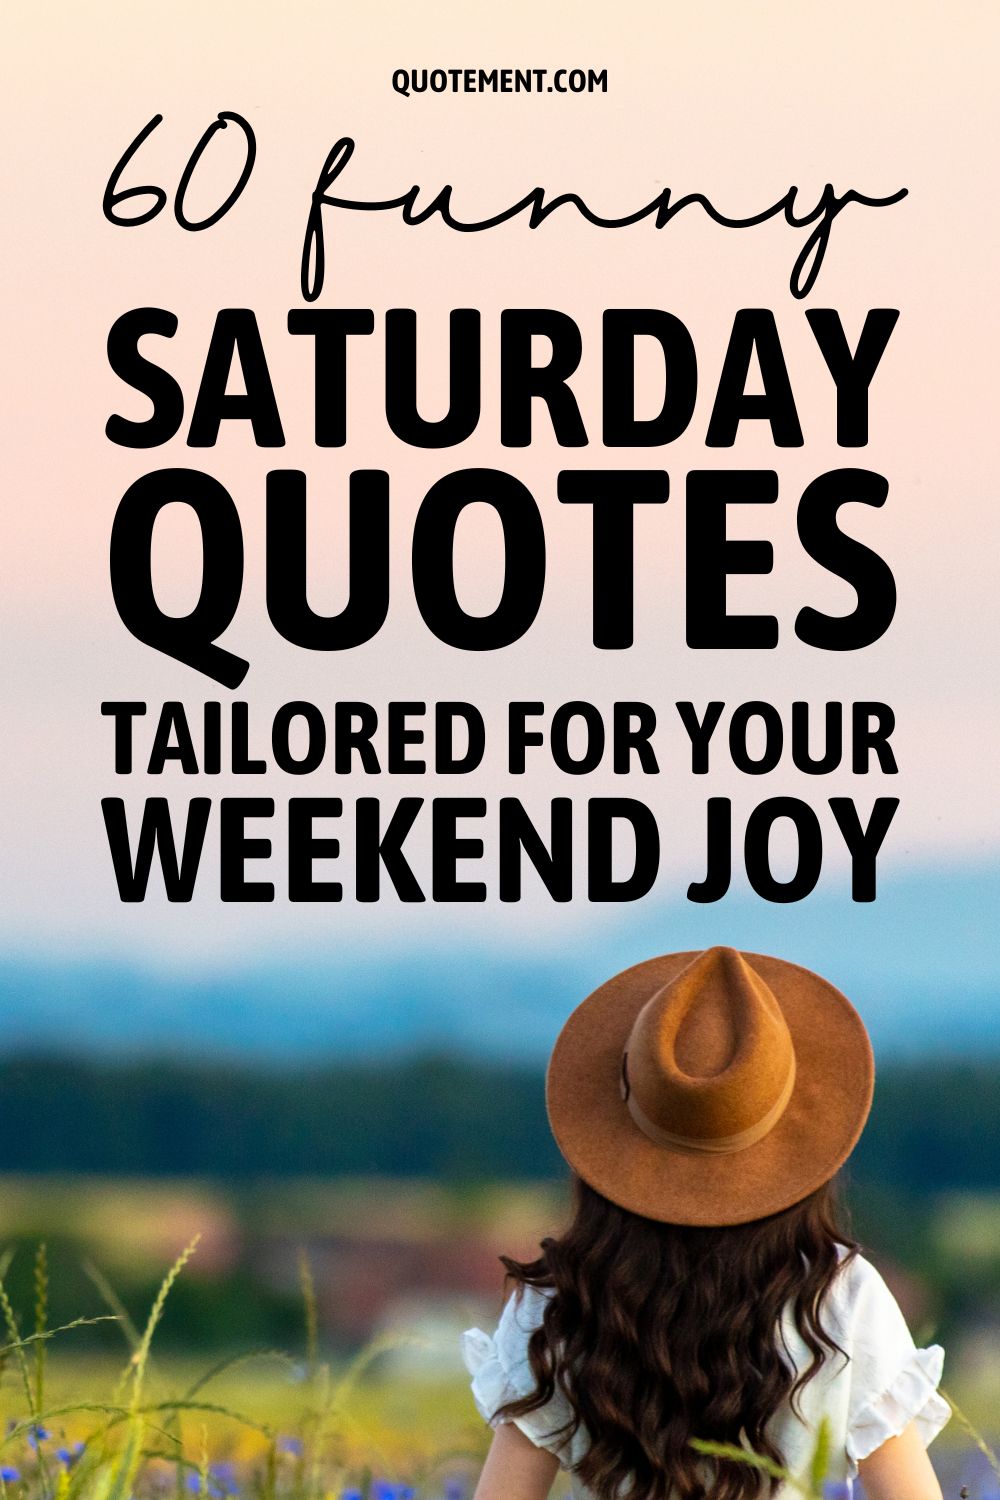 60 citas divertidas de sábado adaptadas a tu alegría de fin de semana 